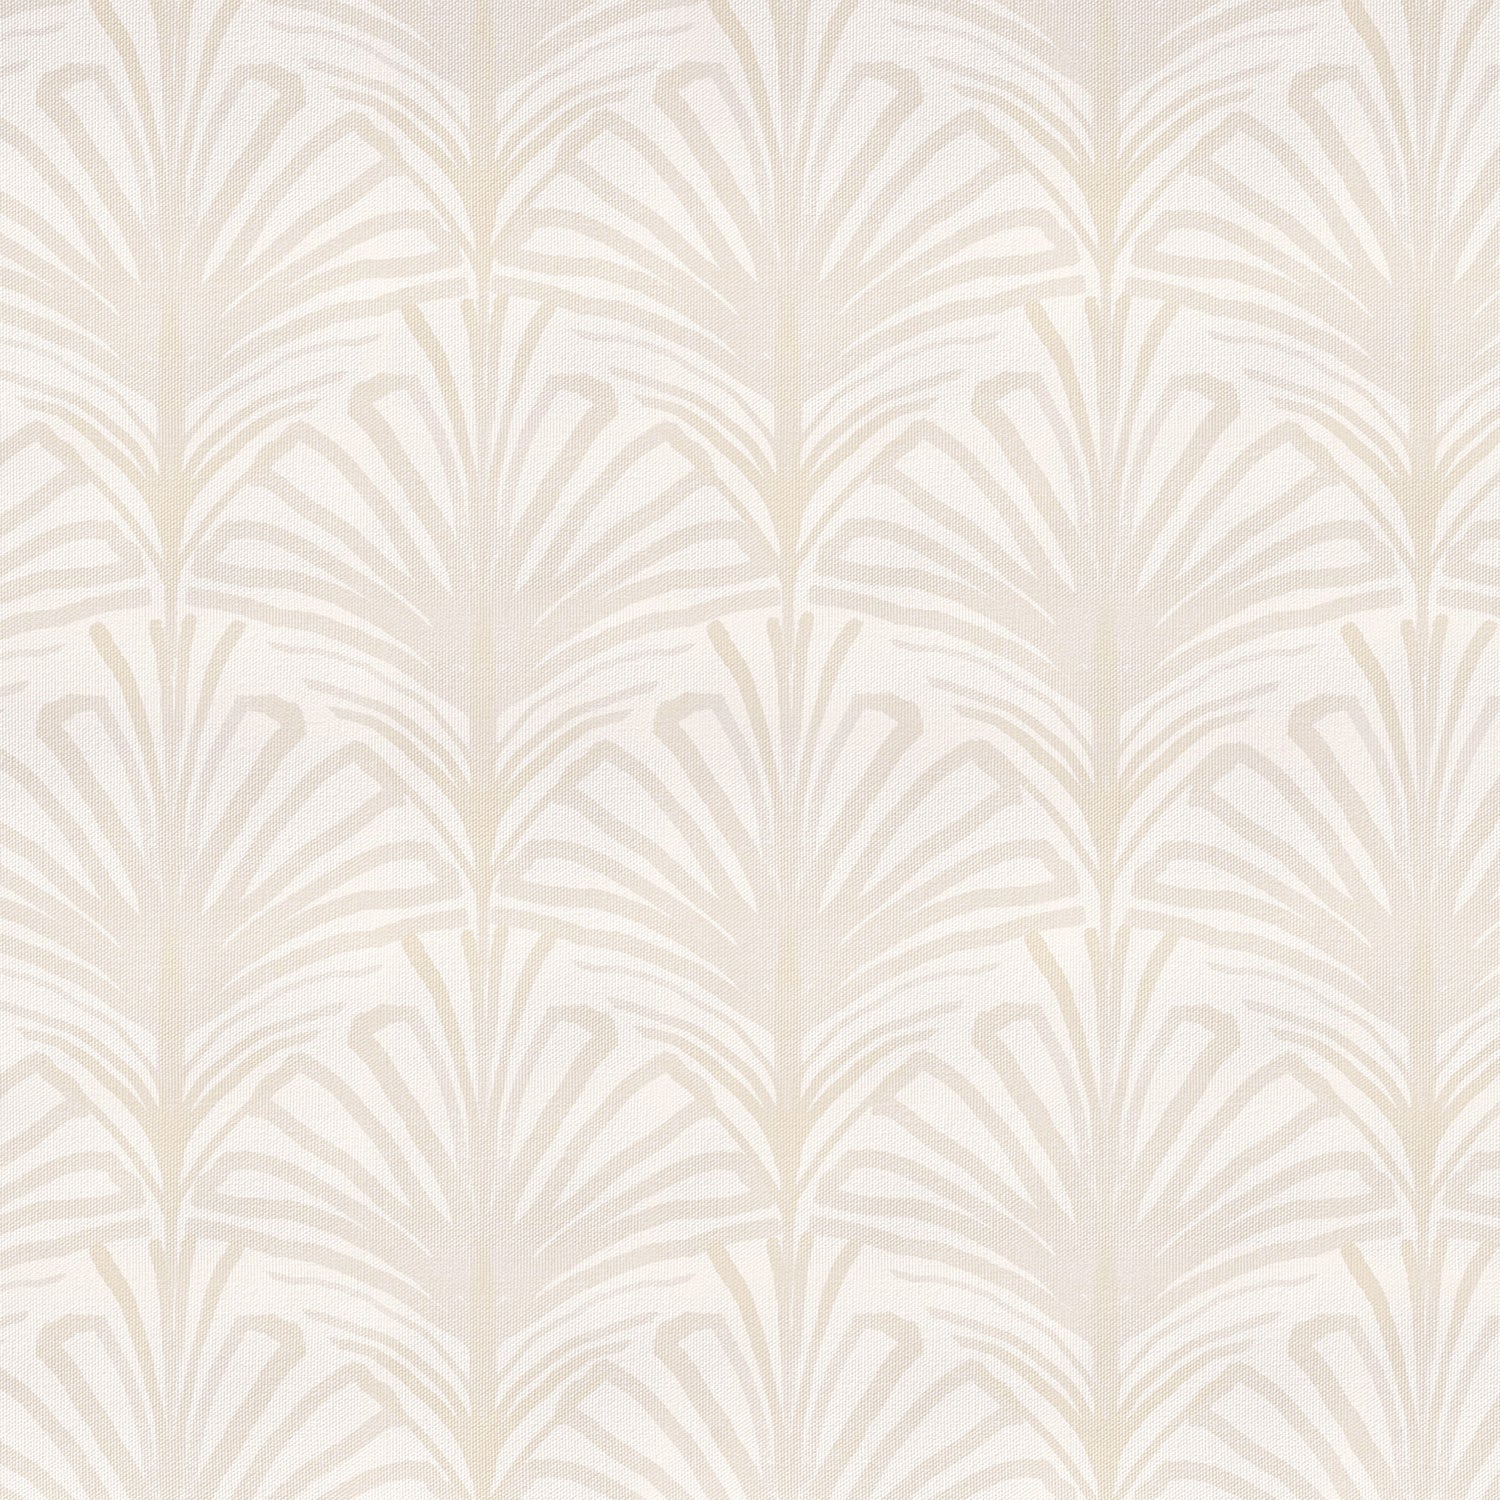 Art Deco Scallop Fabric, Wallpaper and Home Decor